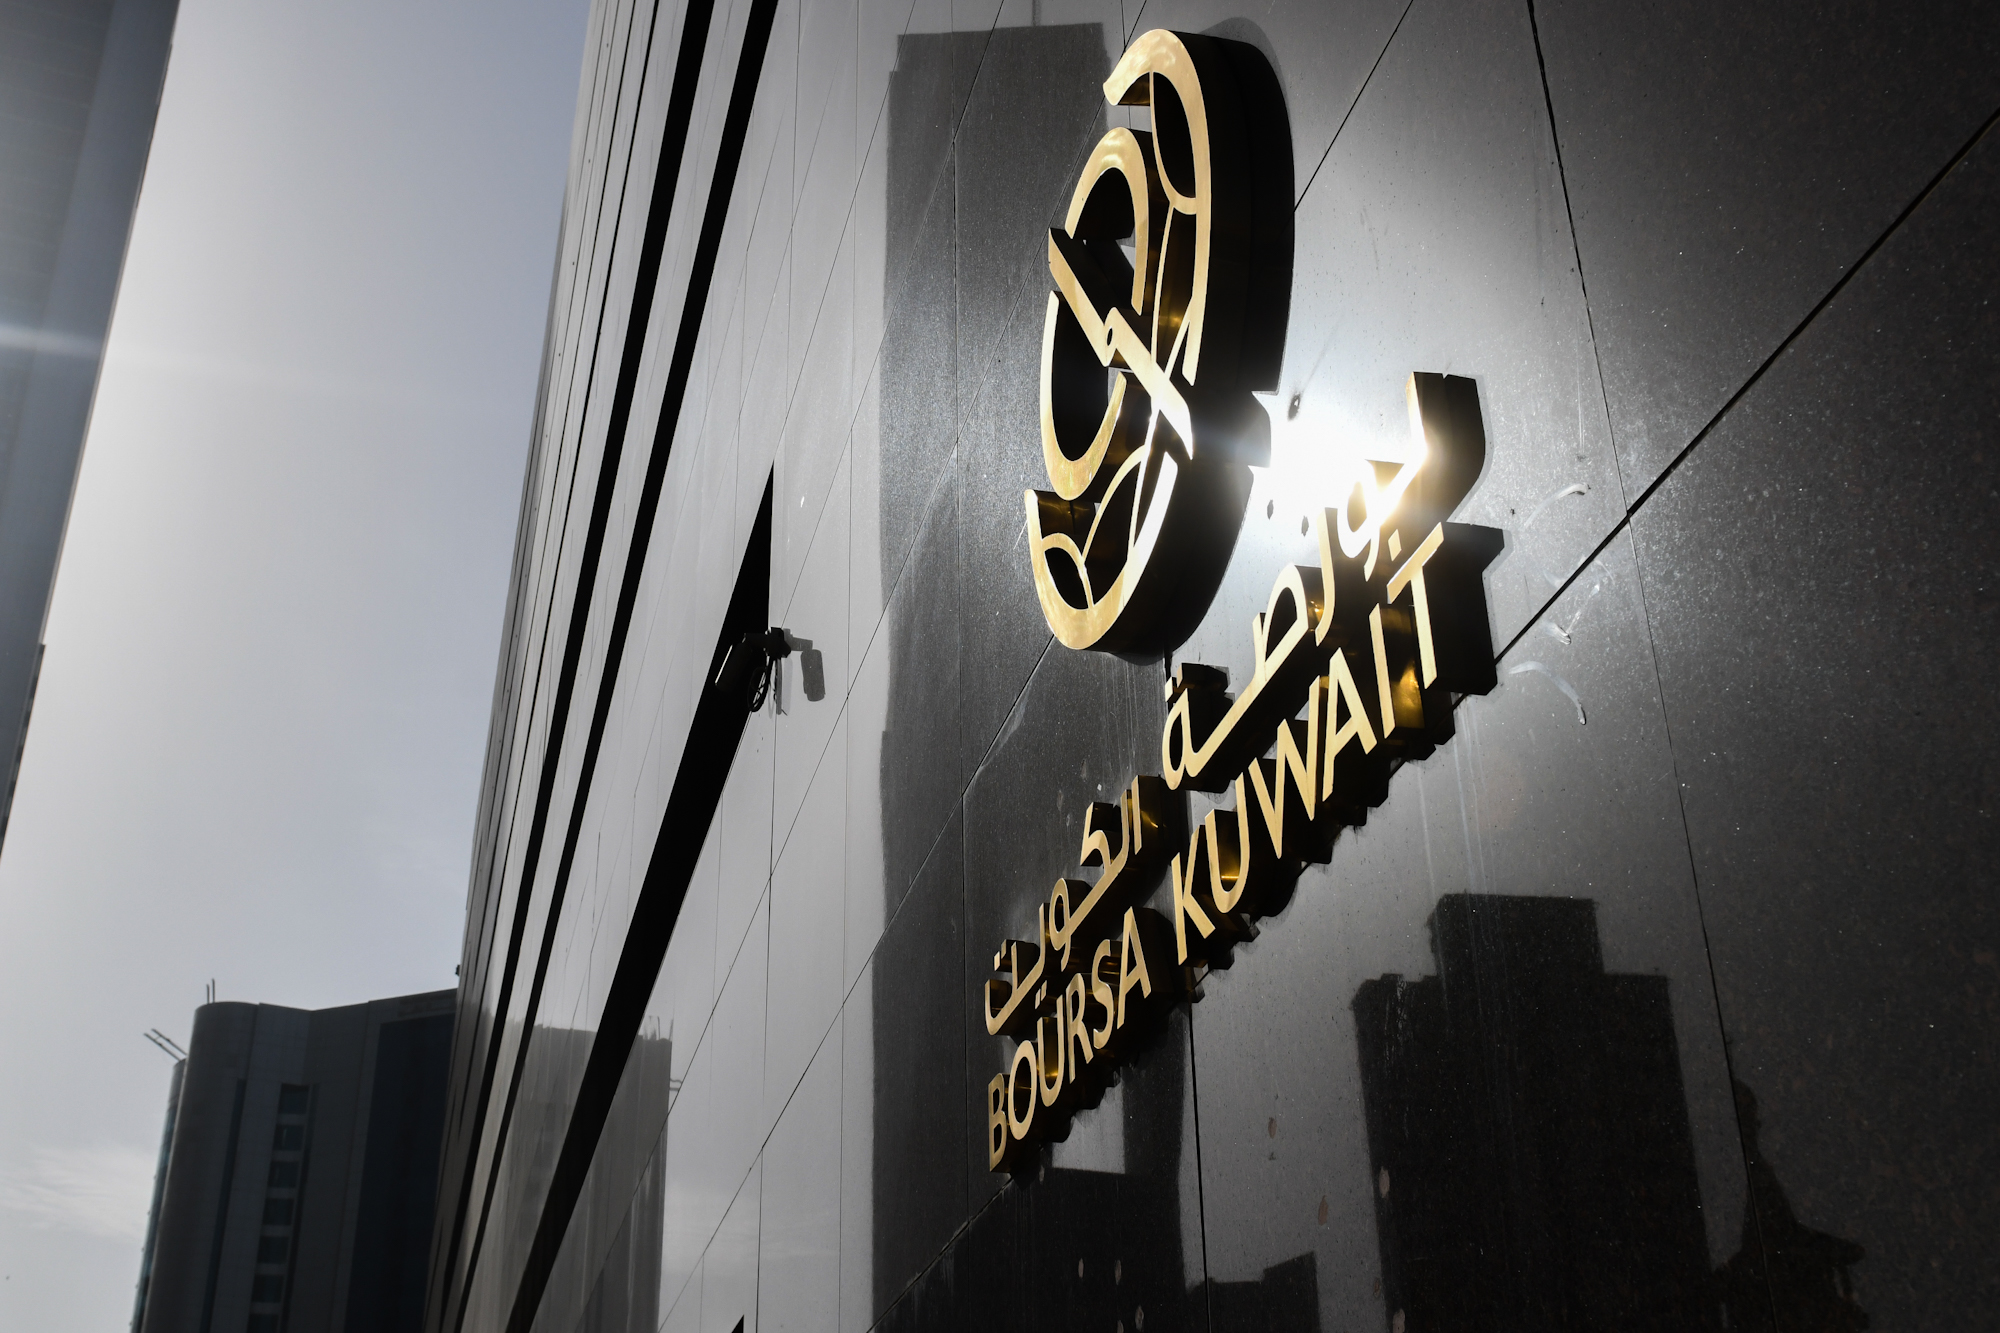 بورصة الكويت تغلق تعاملاتها على انخفاض مؤشرها العام 3ر3 نقطة ليبلغ 87ر6989 بنسبة 05ر0 بالمئة                                                                                                                                                              